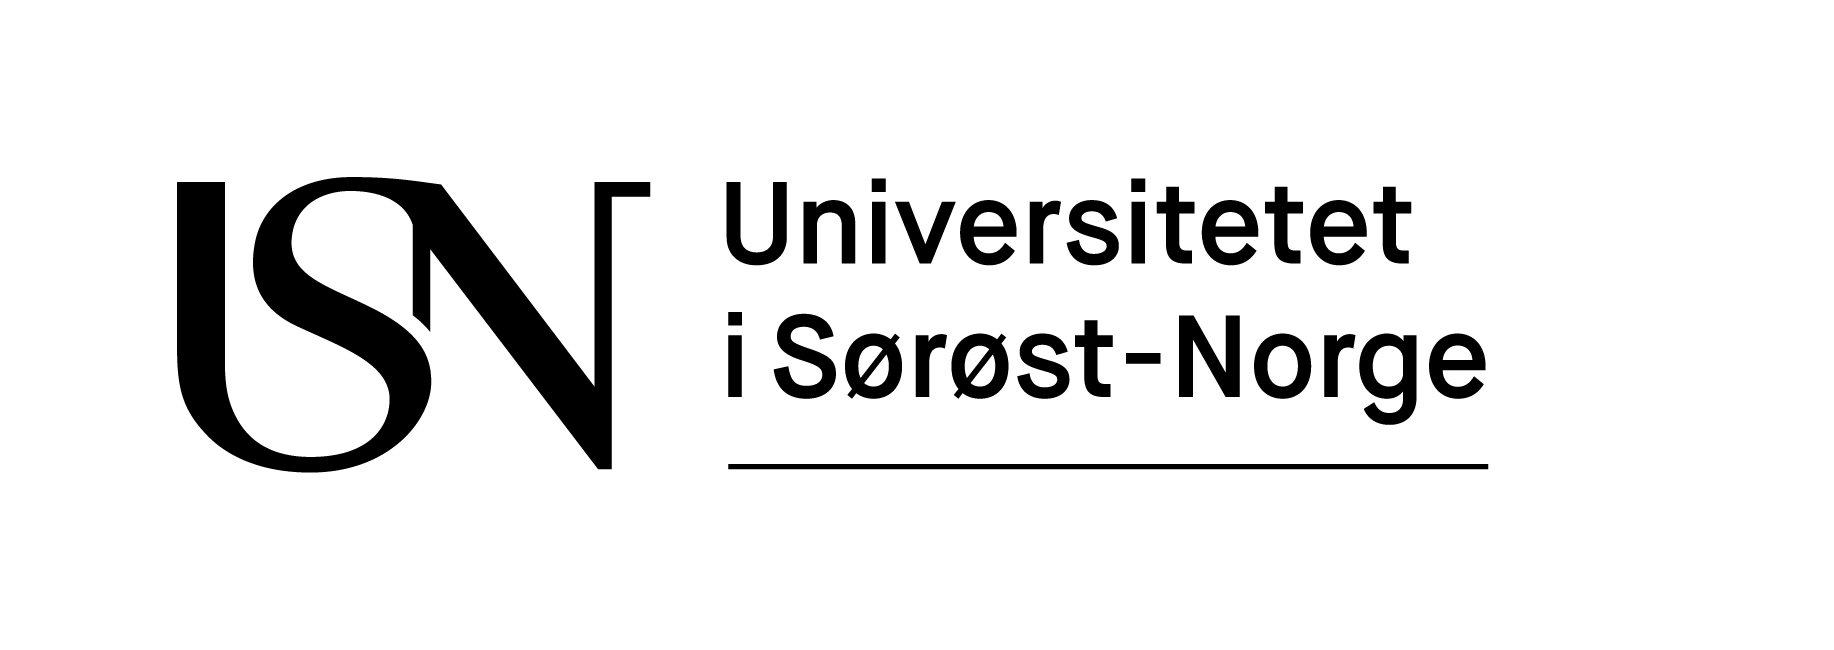 HSN Logo - Logo, design og grafiske elementer - Universitetet i Sørøst-Norge